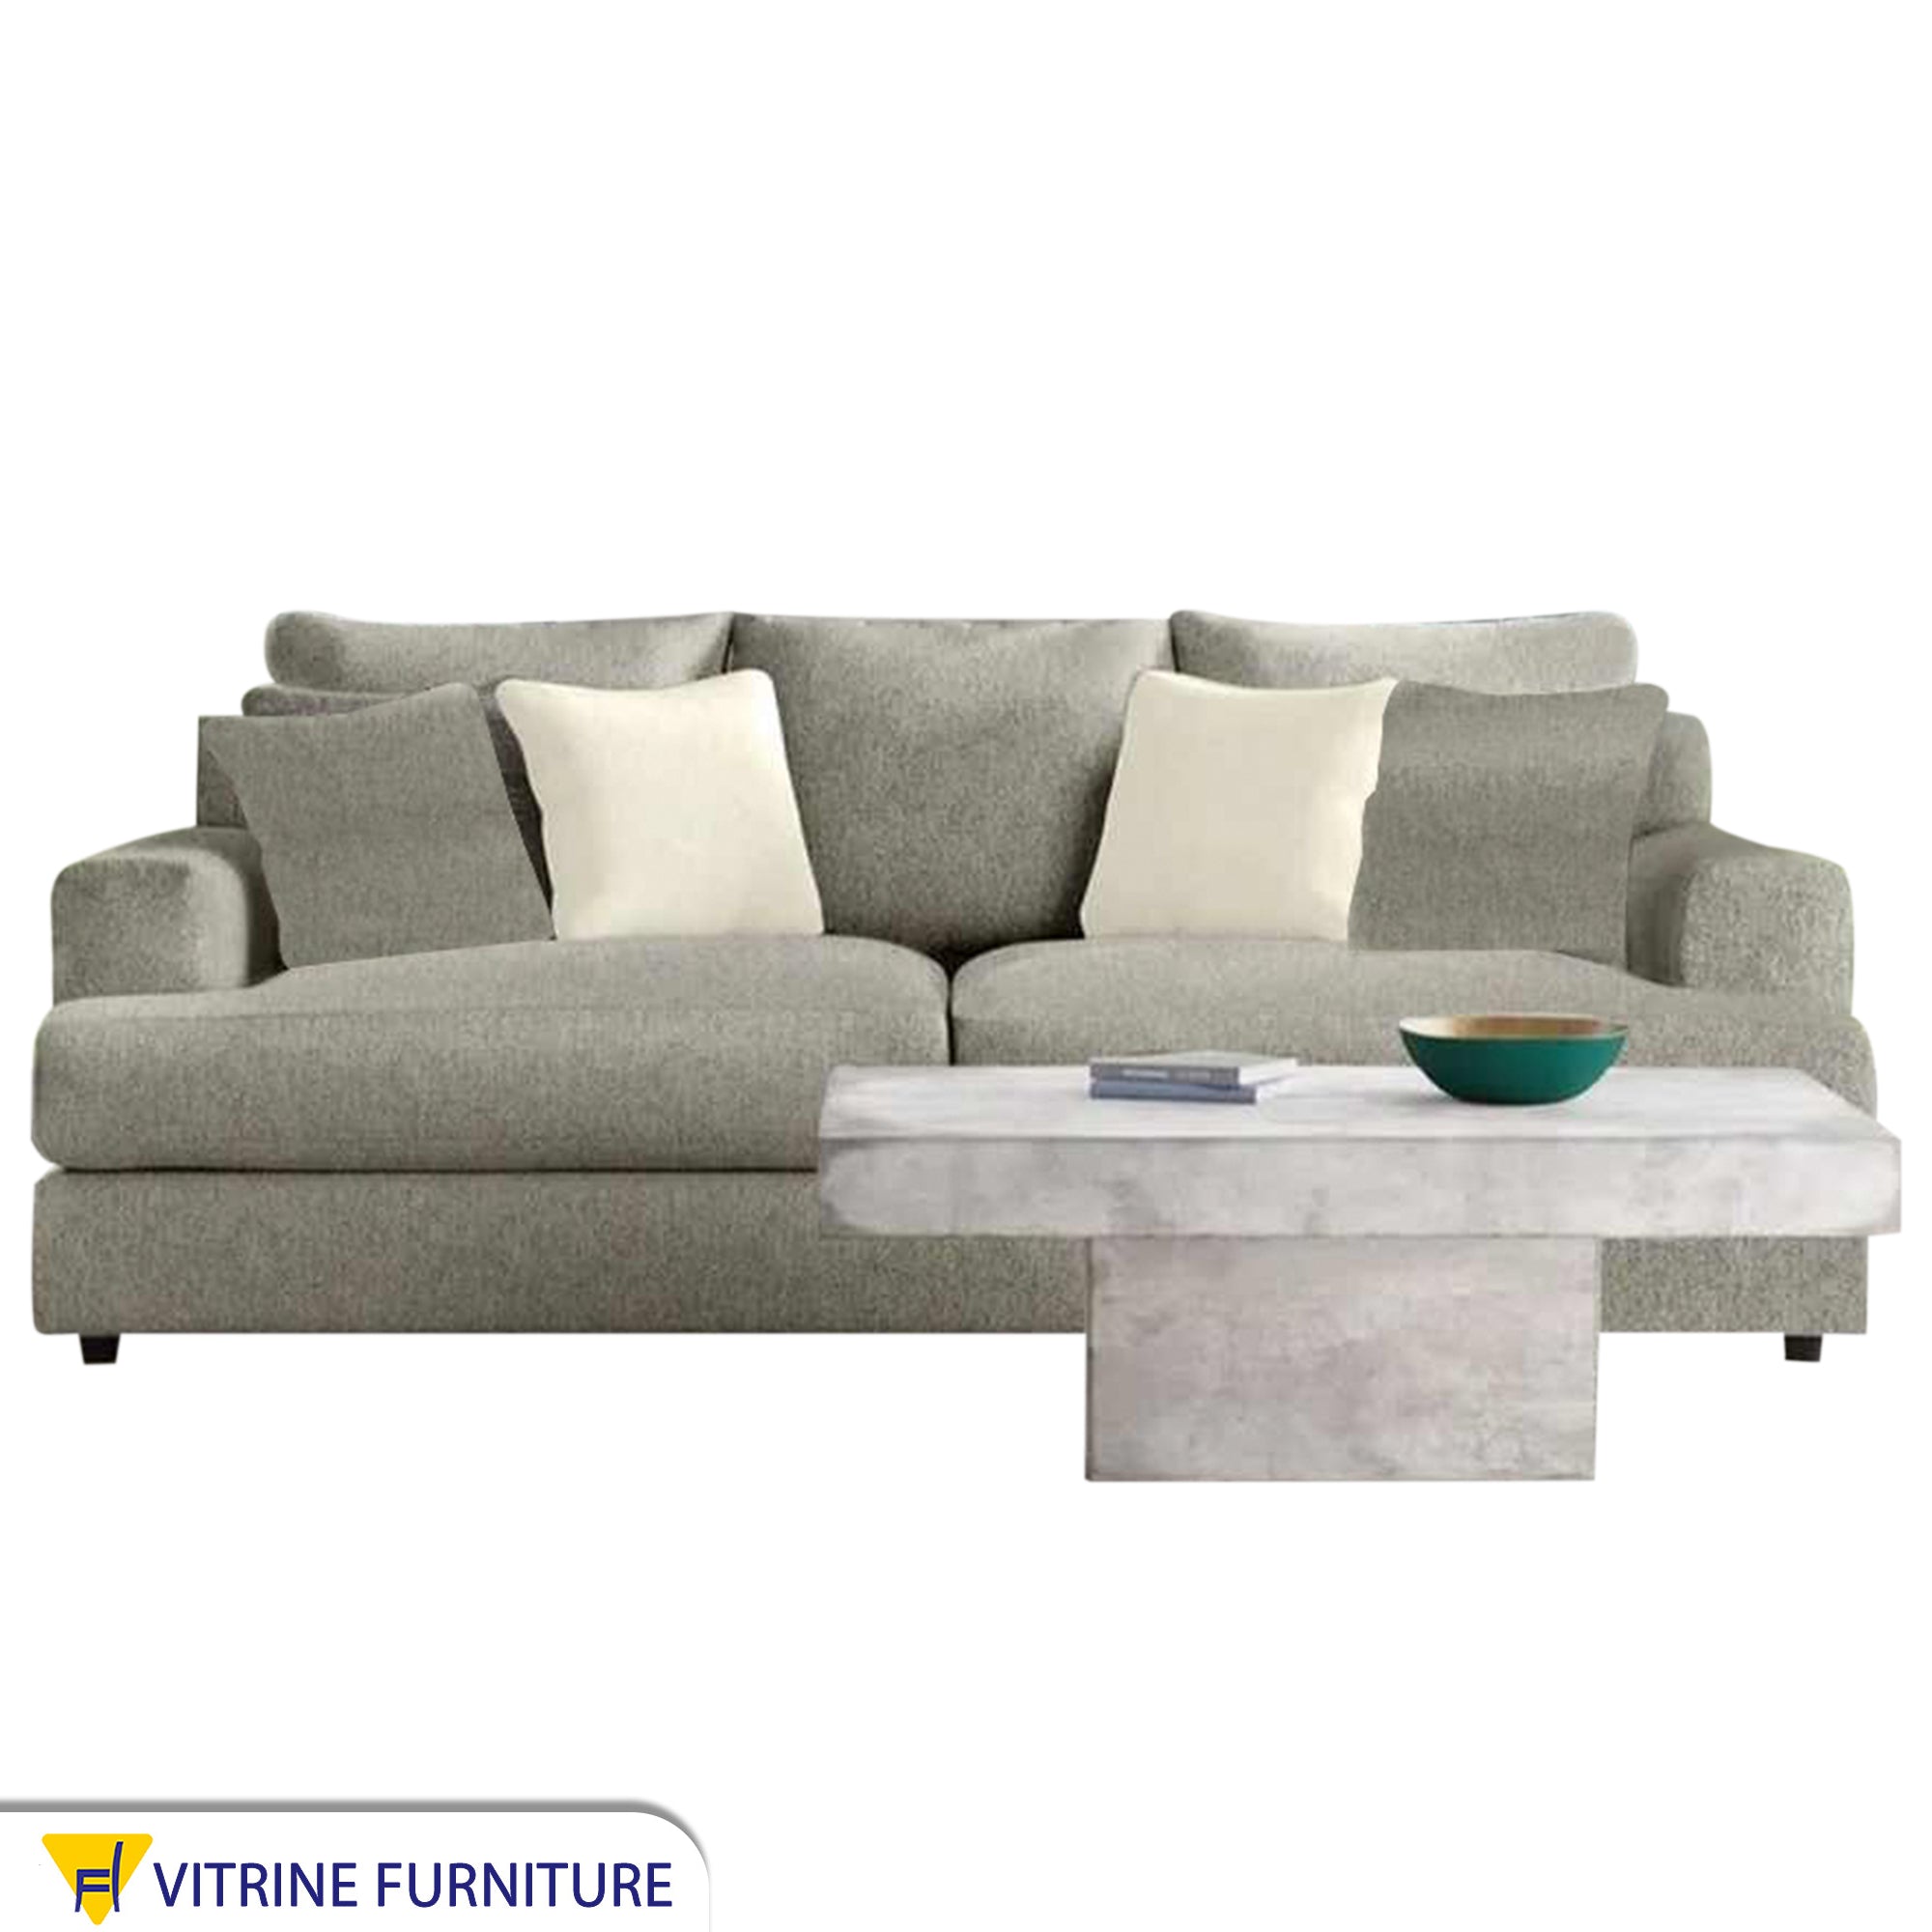 Mint color sofa